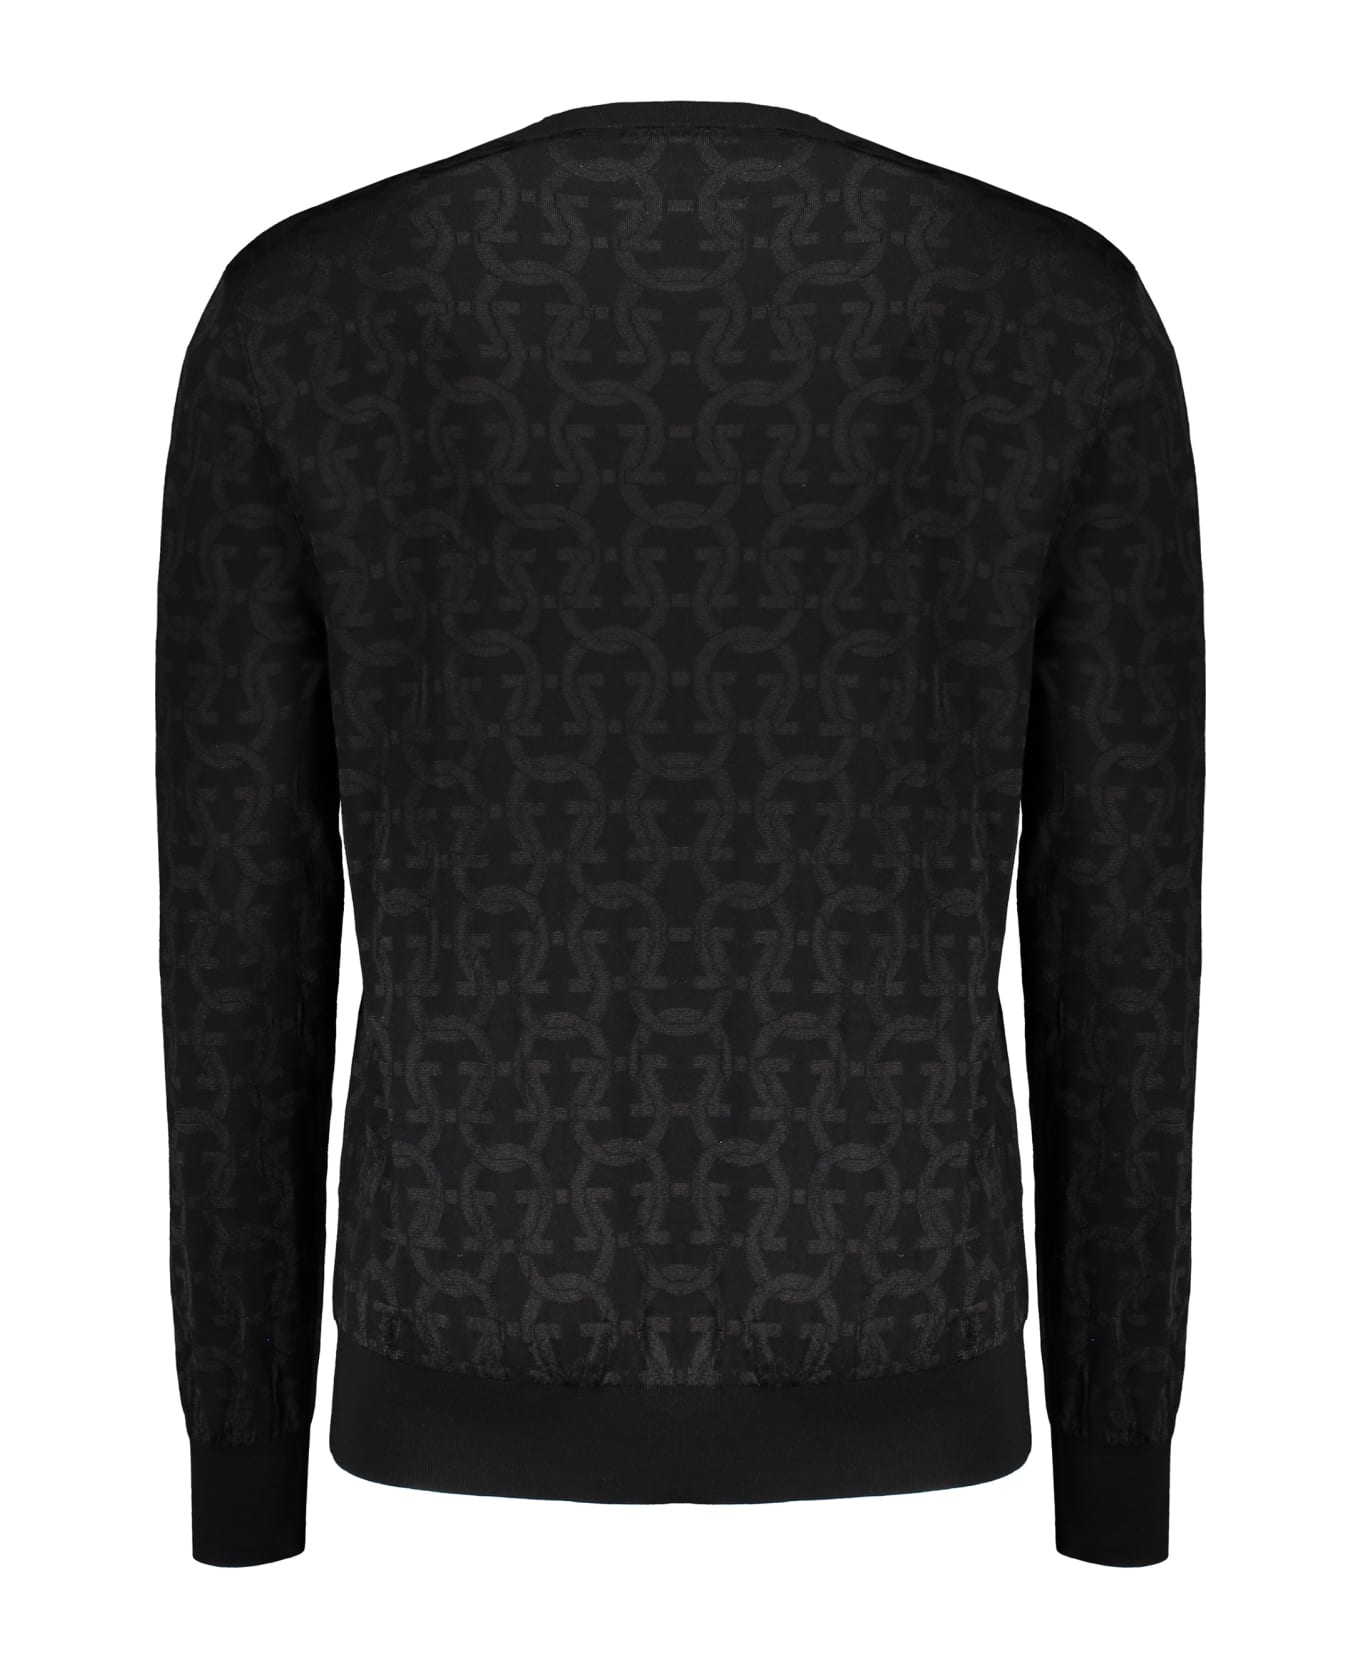 Ferragamo Long Sleeve Crew-neck Sweater - black ニットウェア